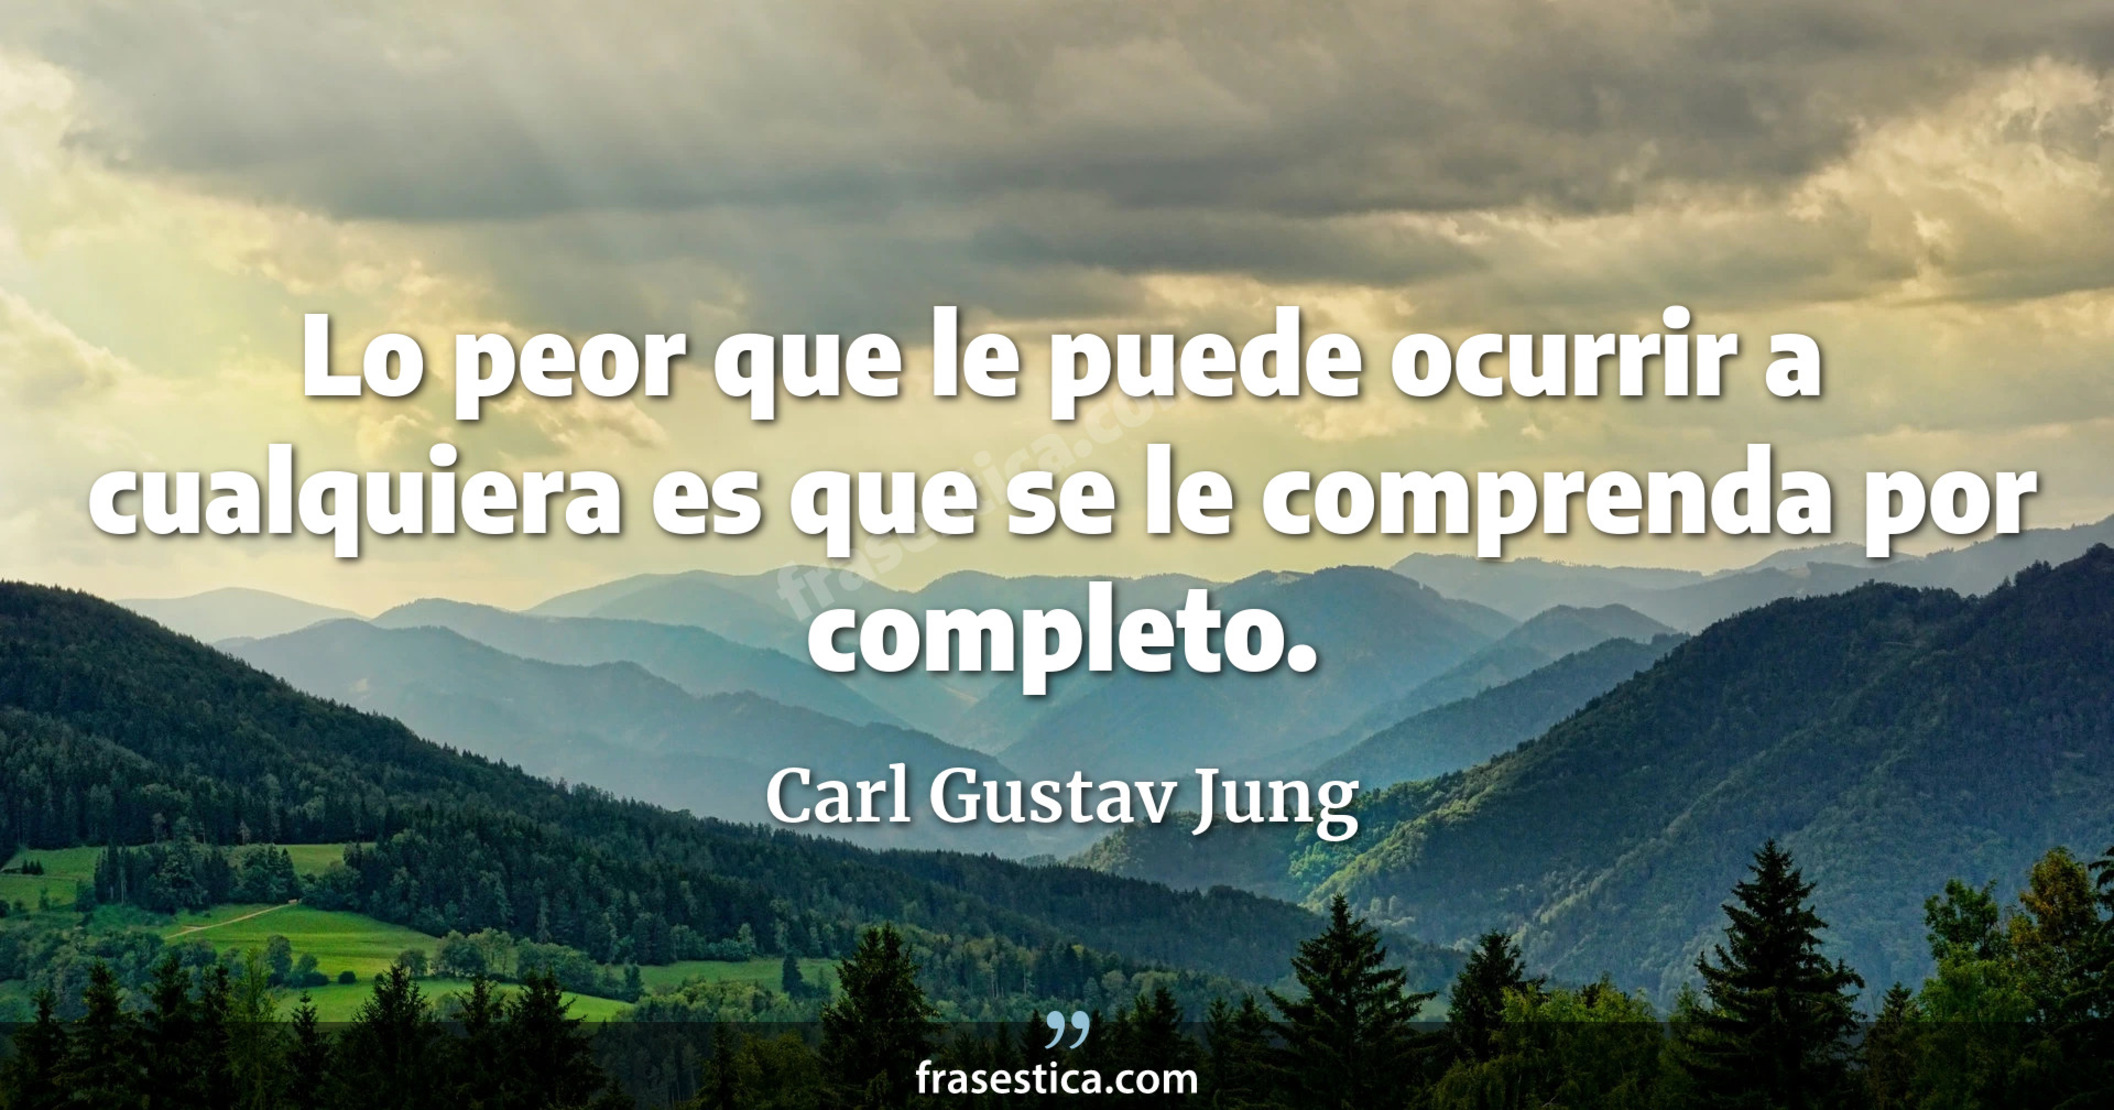 Lo peor que le puede ocurrir a cualquiera es que se le comprenda por completo. - Carl Gustav Jung